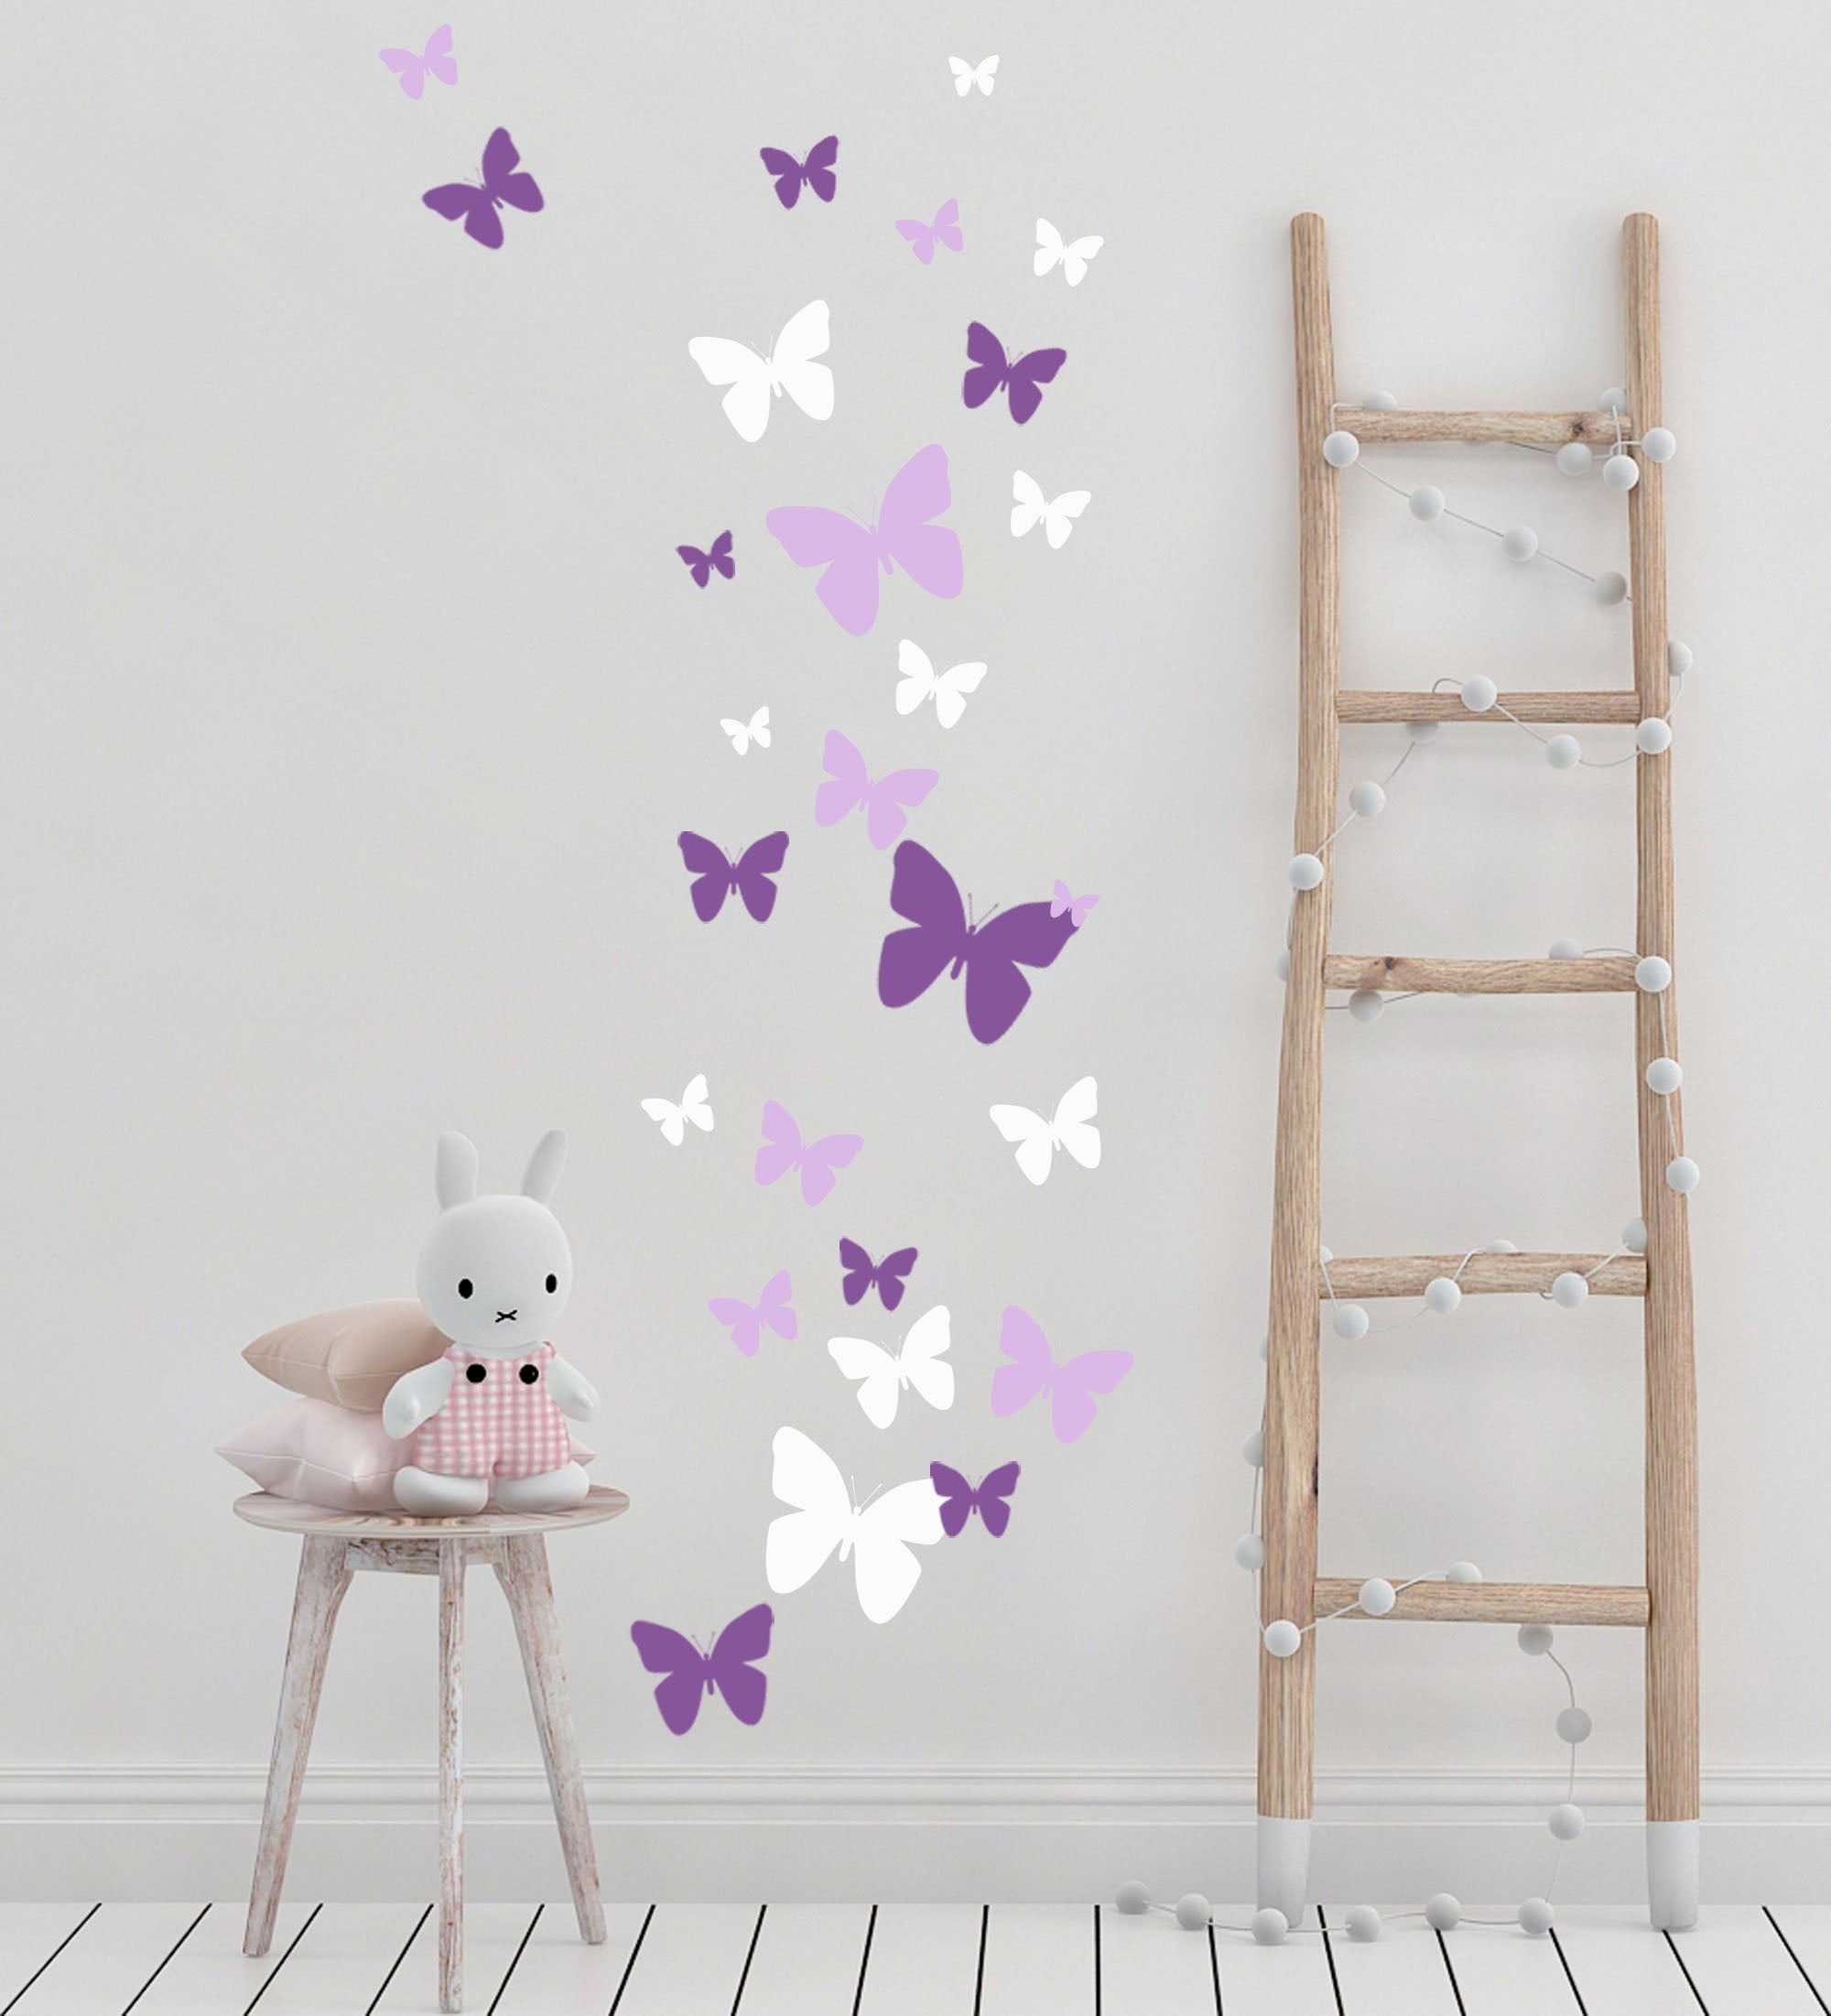 Butterfly Love Car Sticker – WallDesign